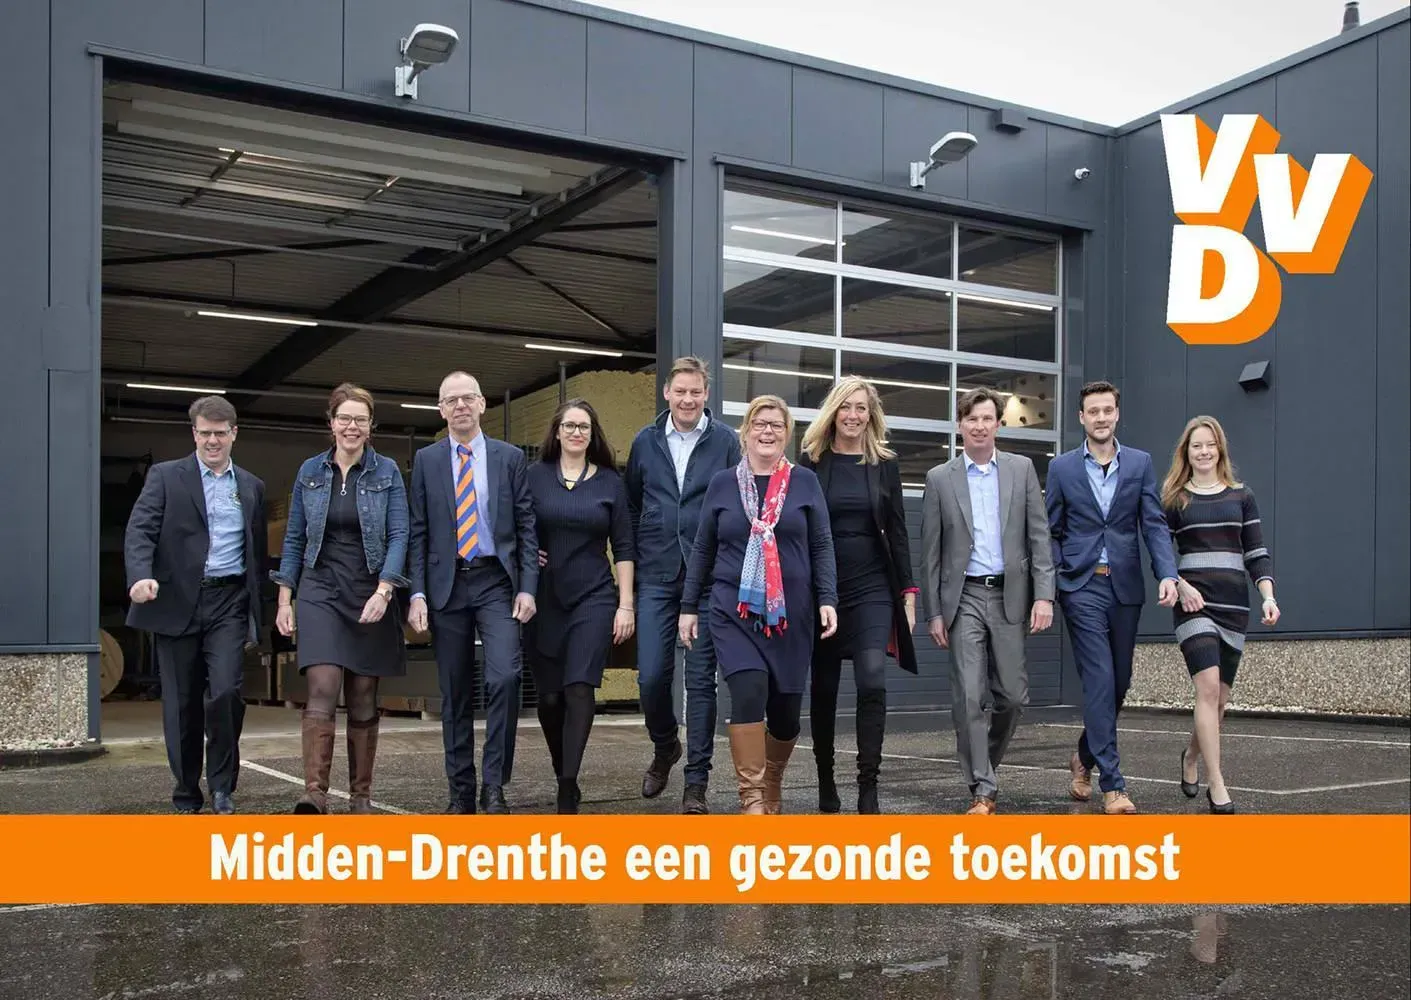 In opdracht van VVD Midden Drenthe